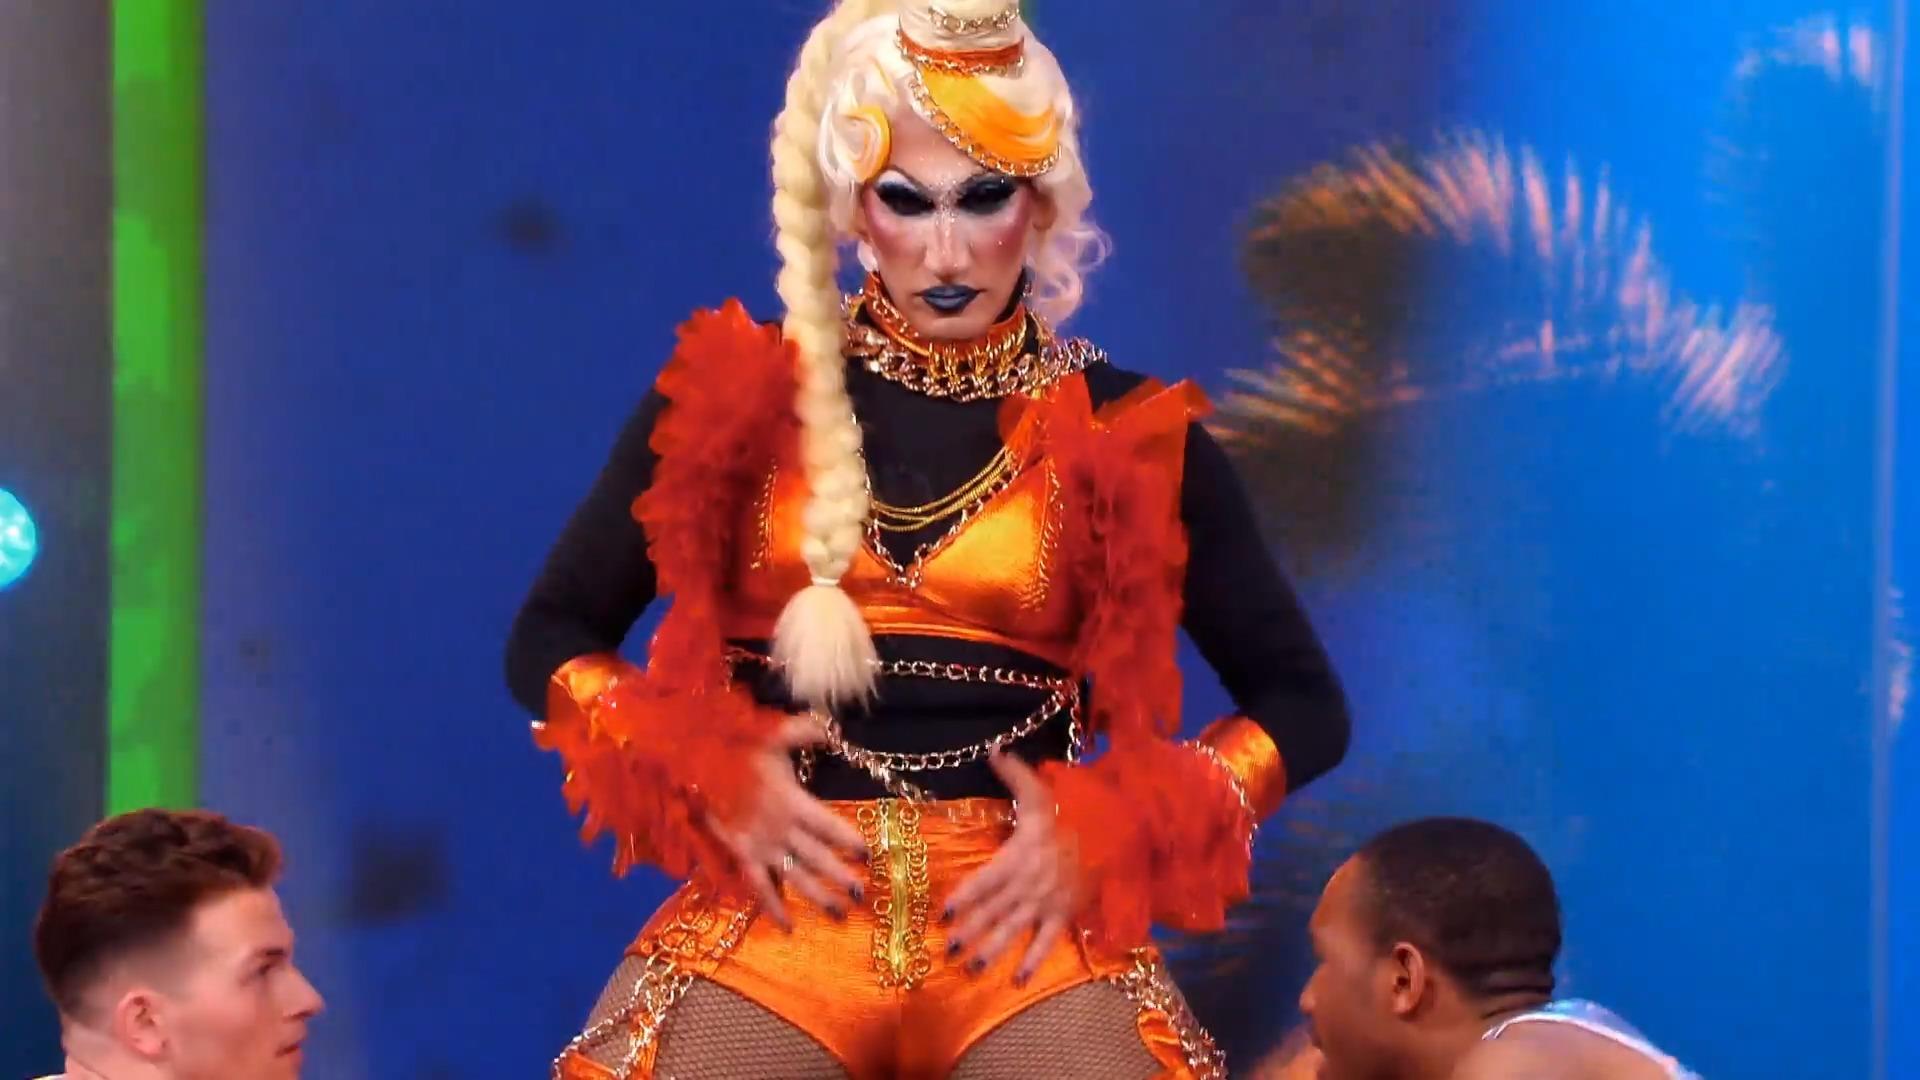 Drag Queen "Mizzy Mi" heizt ganz schön ein Viva la Diva: Sexy Performance auf High Heels